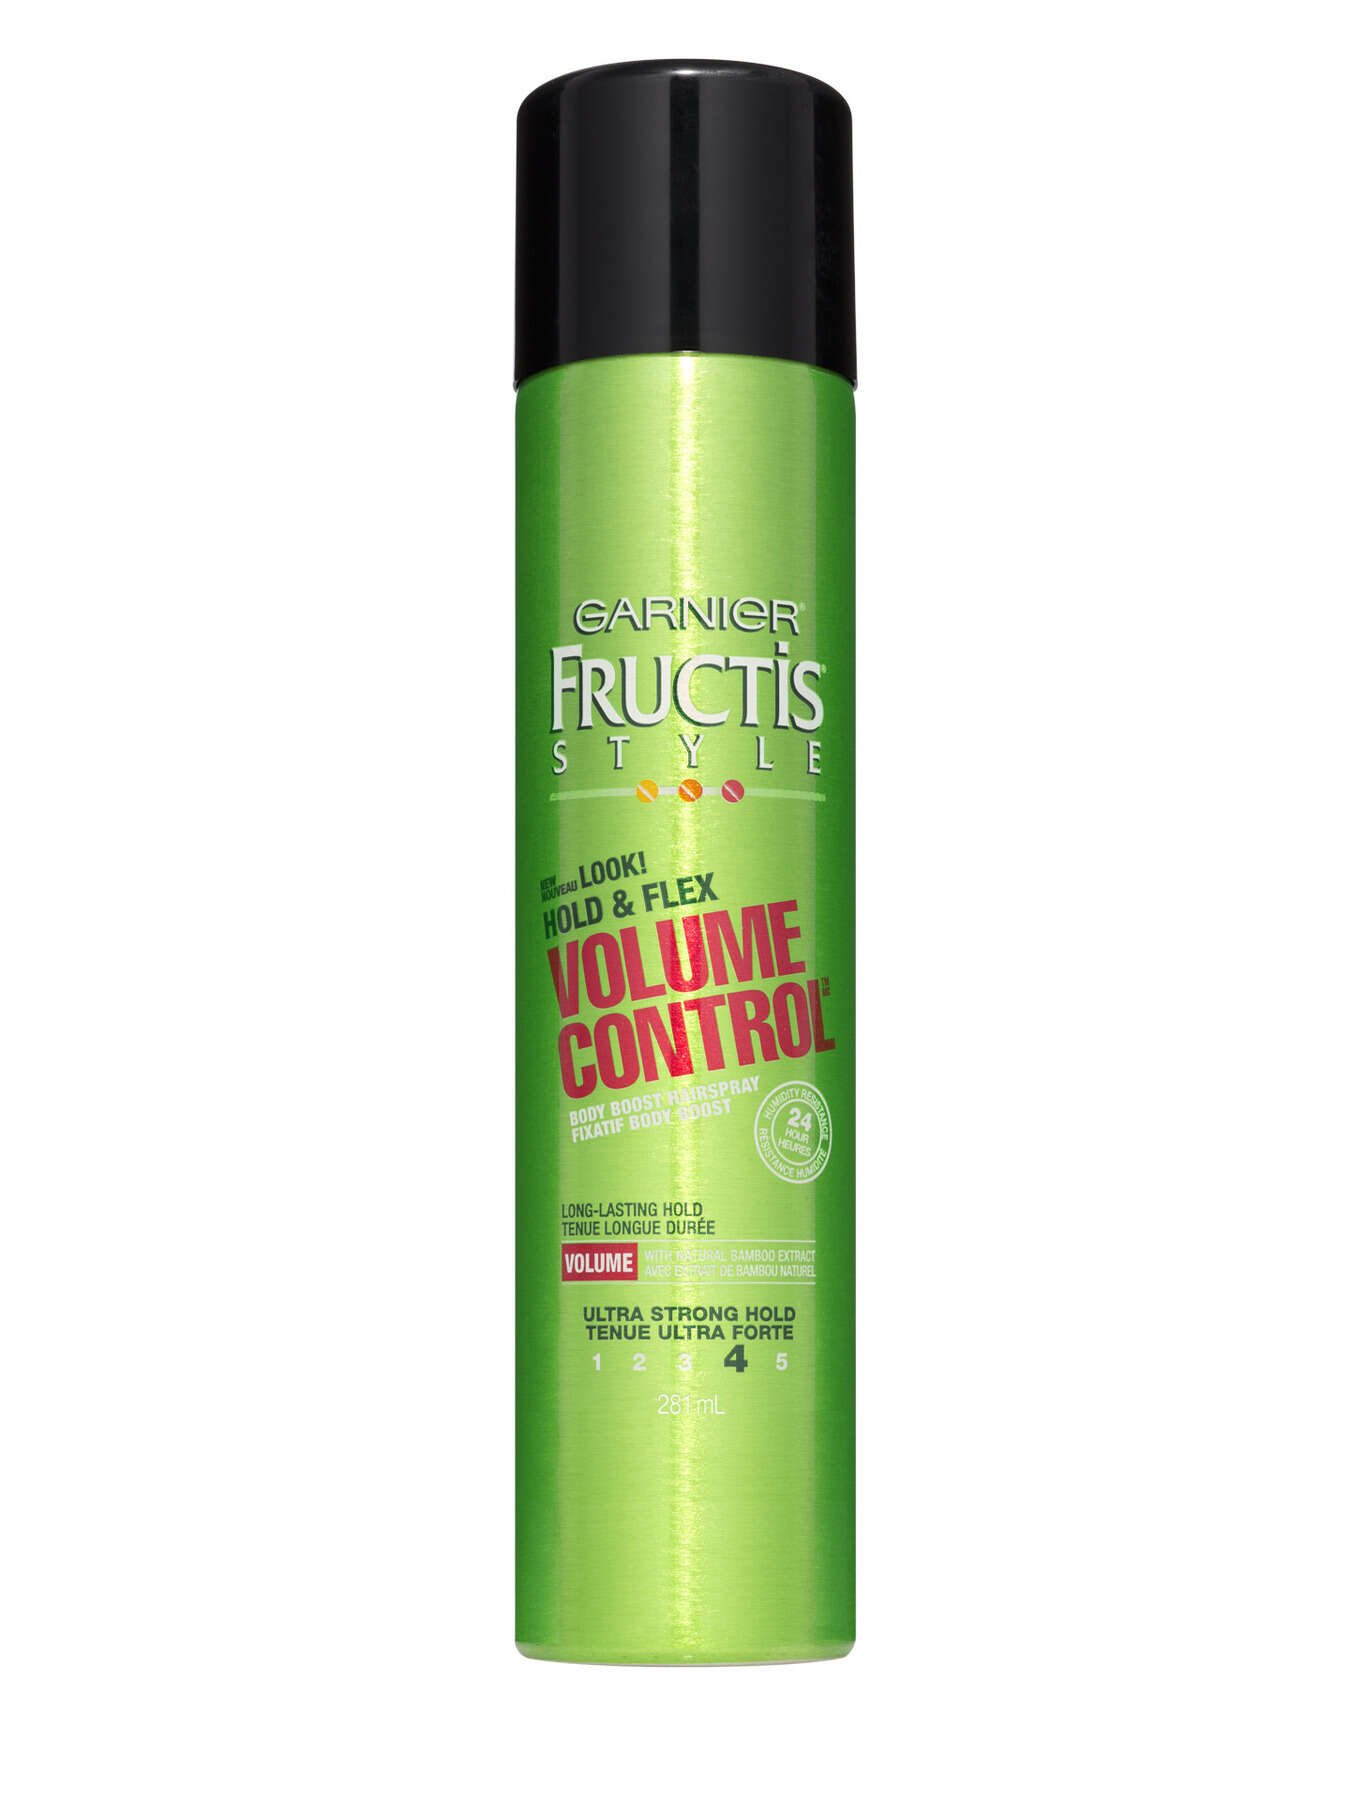 Volume Control | Garnier Fructis Style Hold & Flex